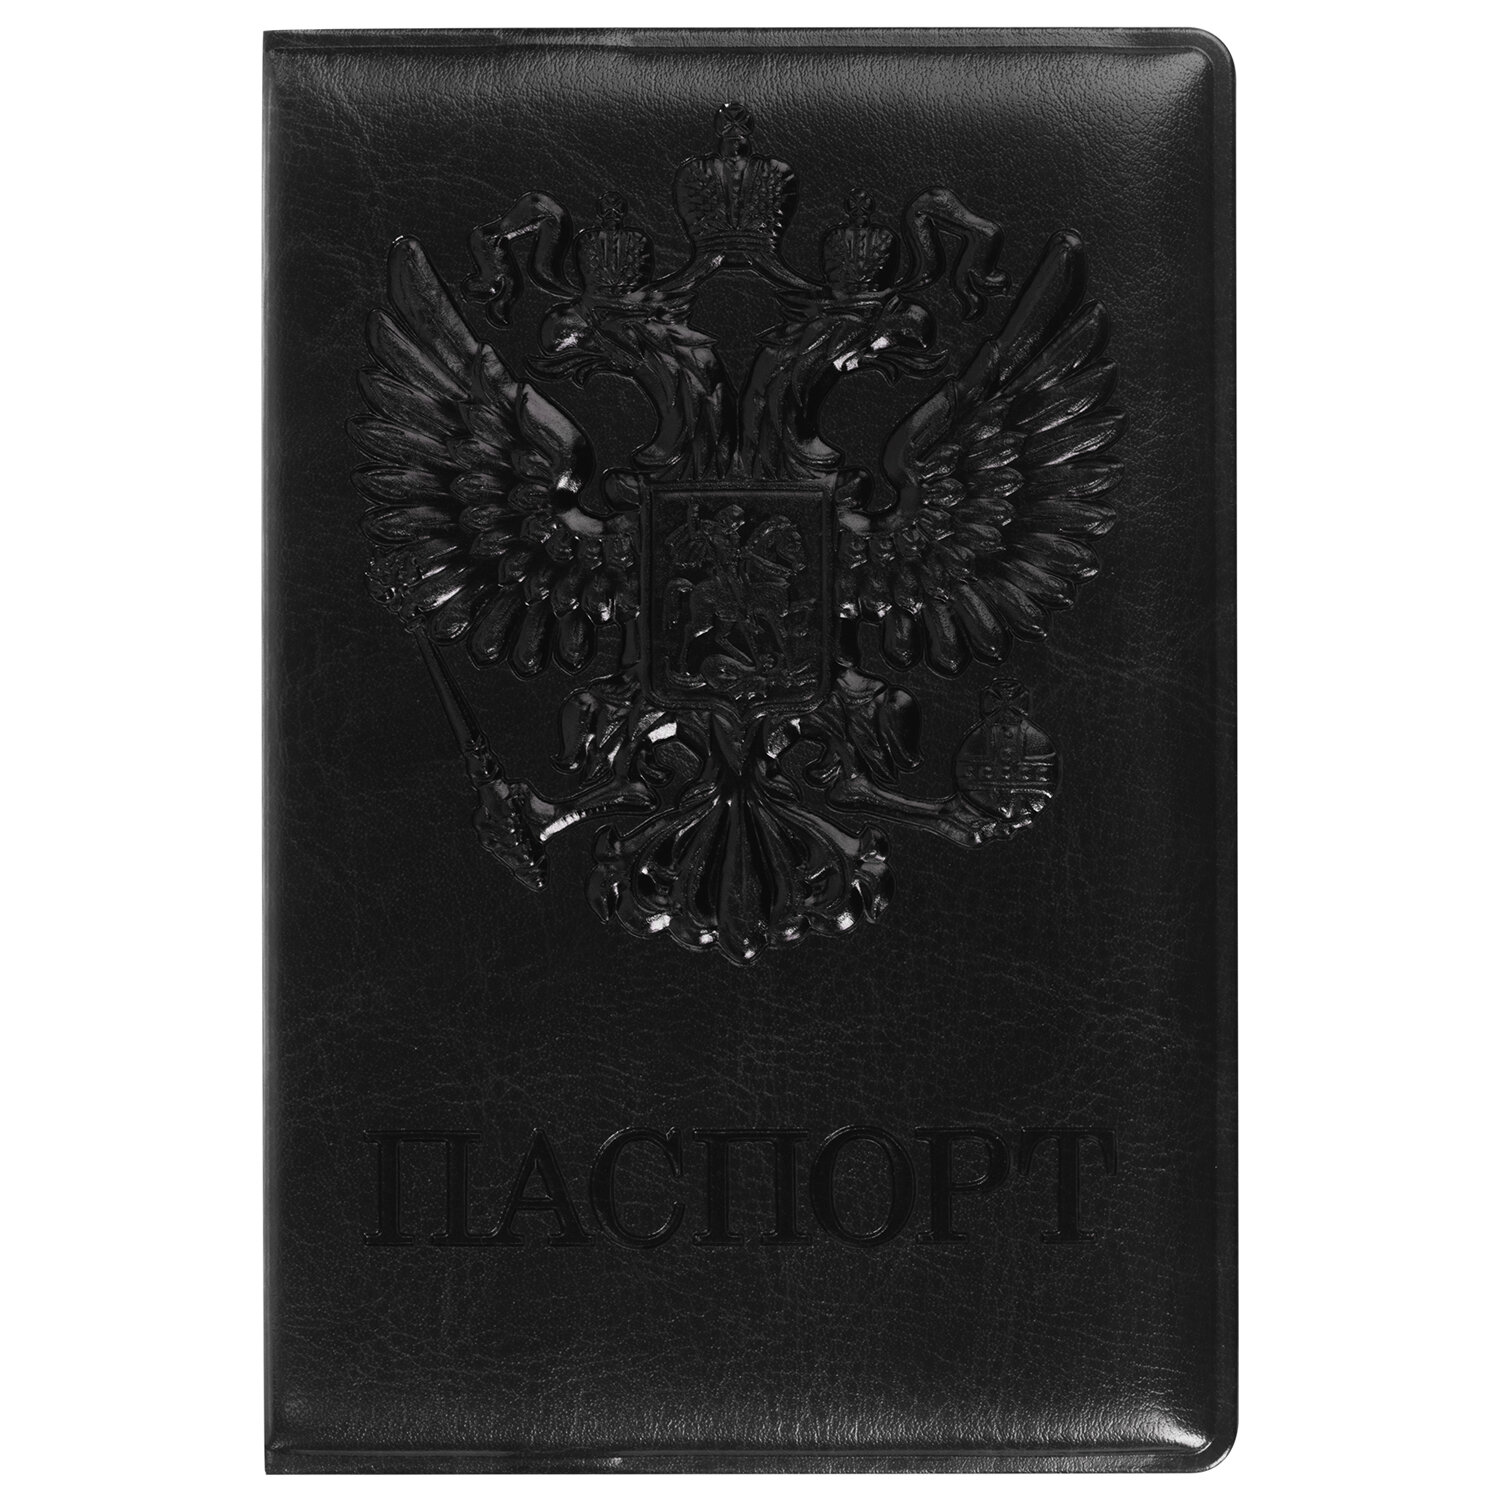 Обложка для паспорта Staff полиуретан под кожу, с гербом, чёрный